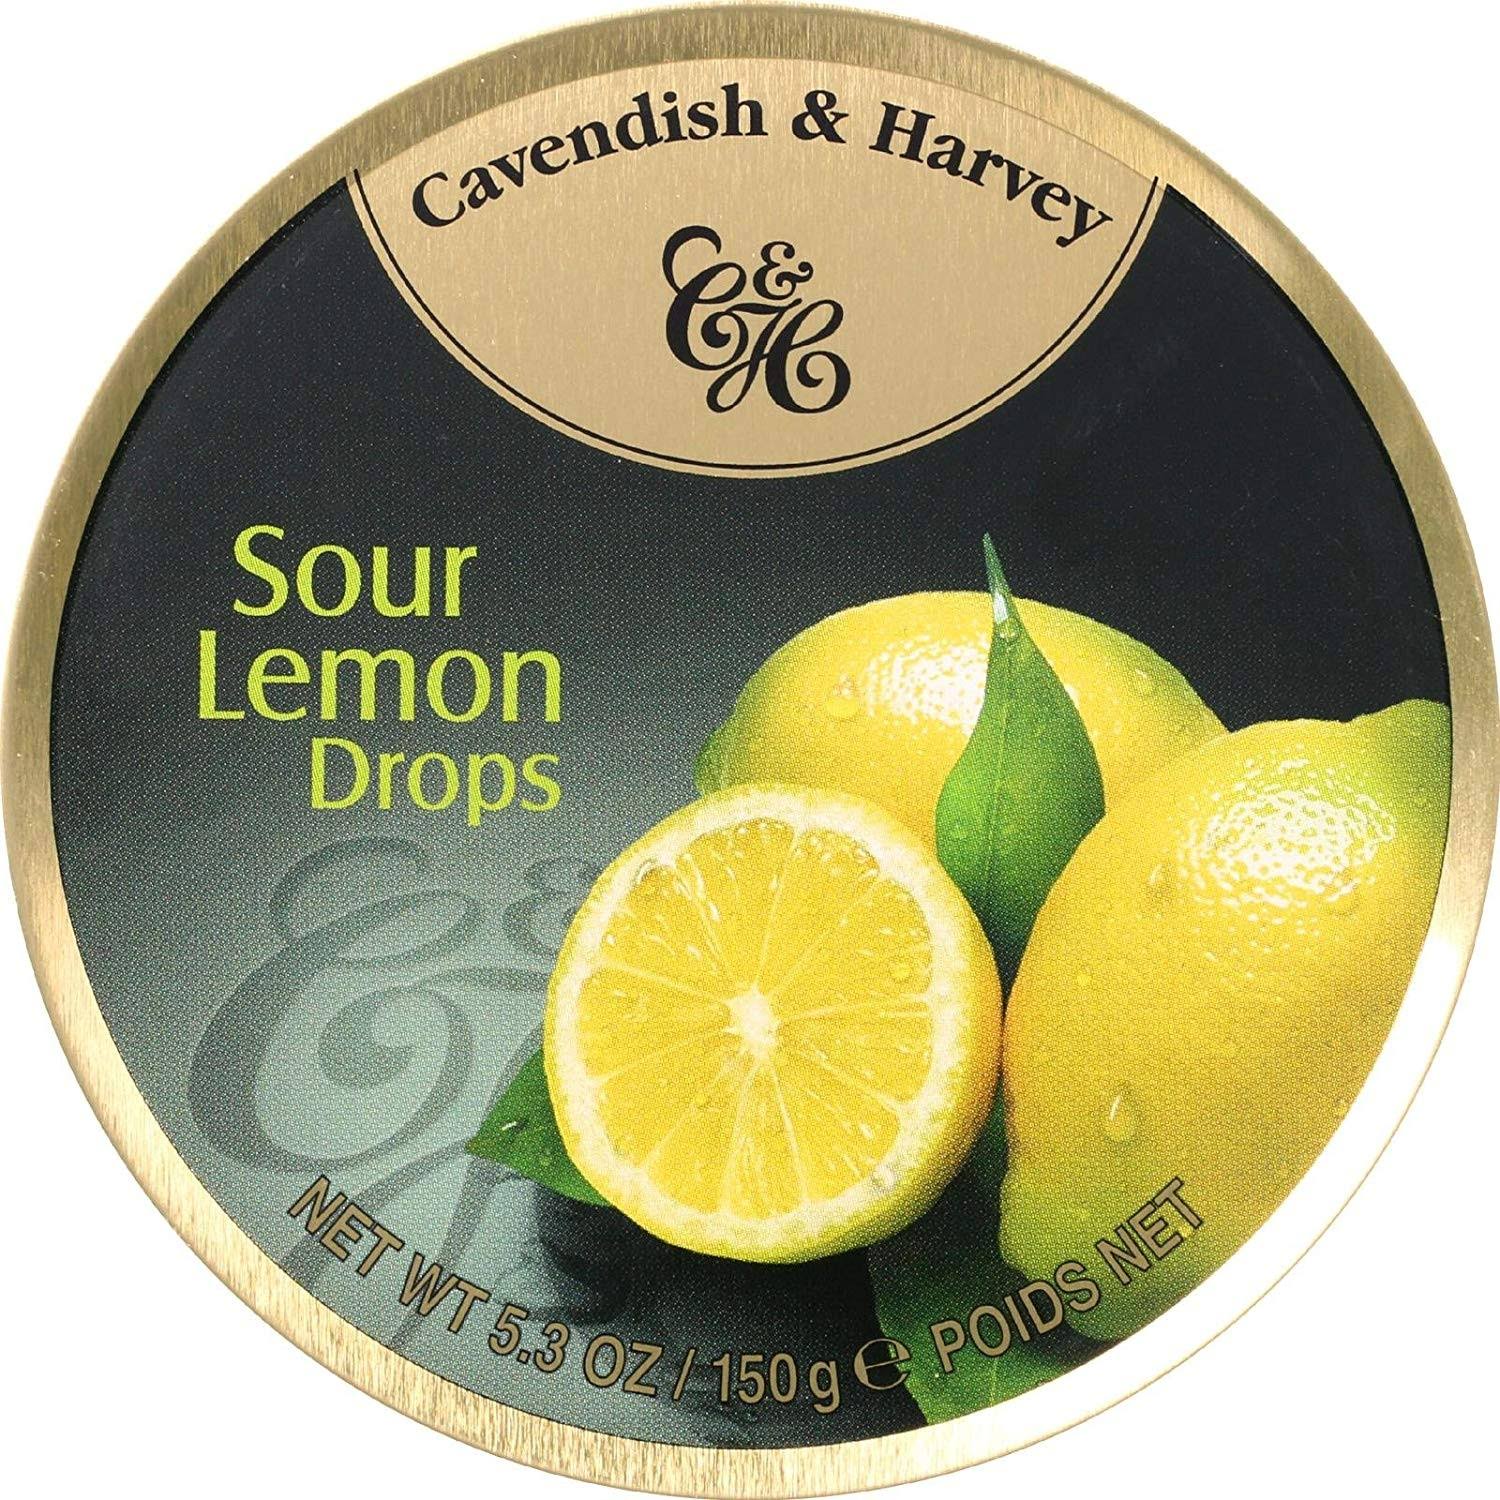 Cavendish & Harvey Sour Lemon Drops - 5.3oz